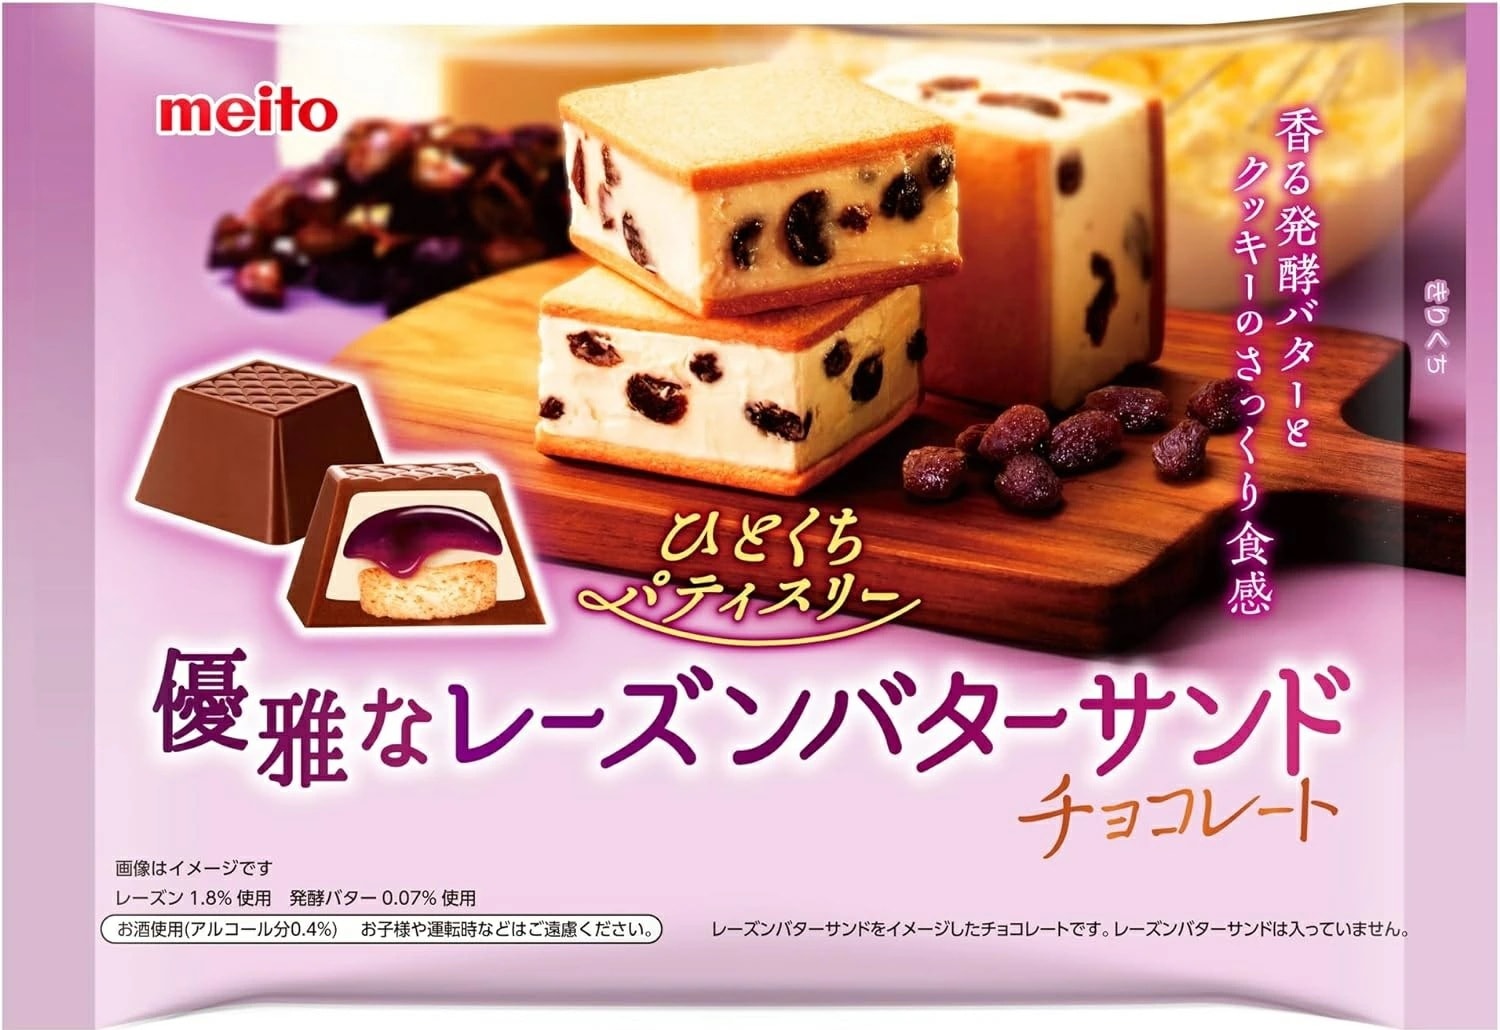 【送料無料】meito 名糖産業 名糖 ひとくちパティスリー ラムレーズンバター 124g2ケース/36袋